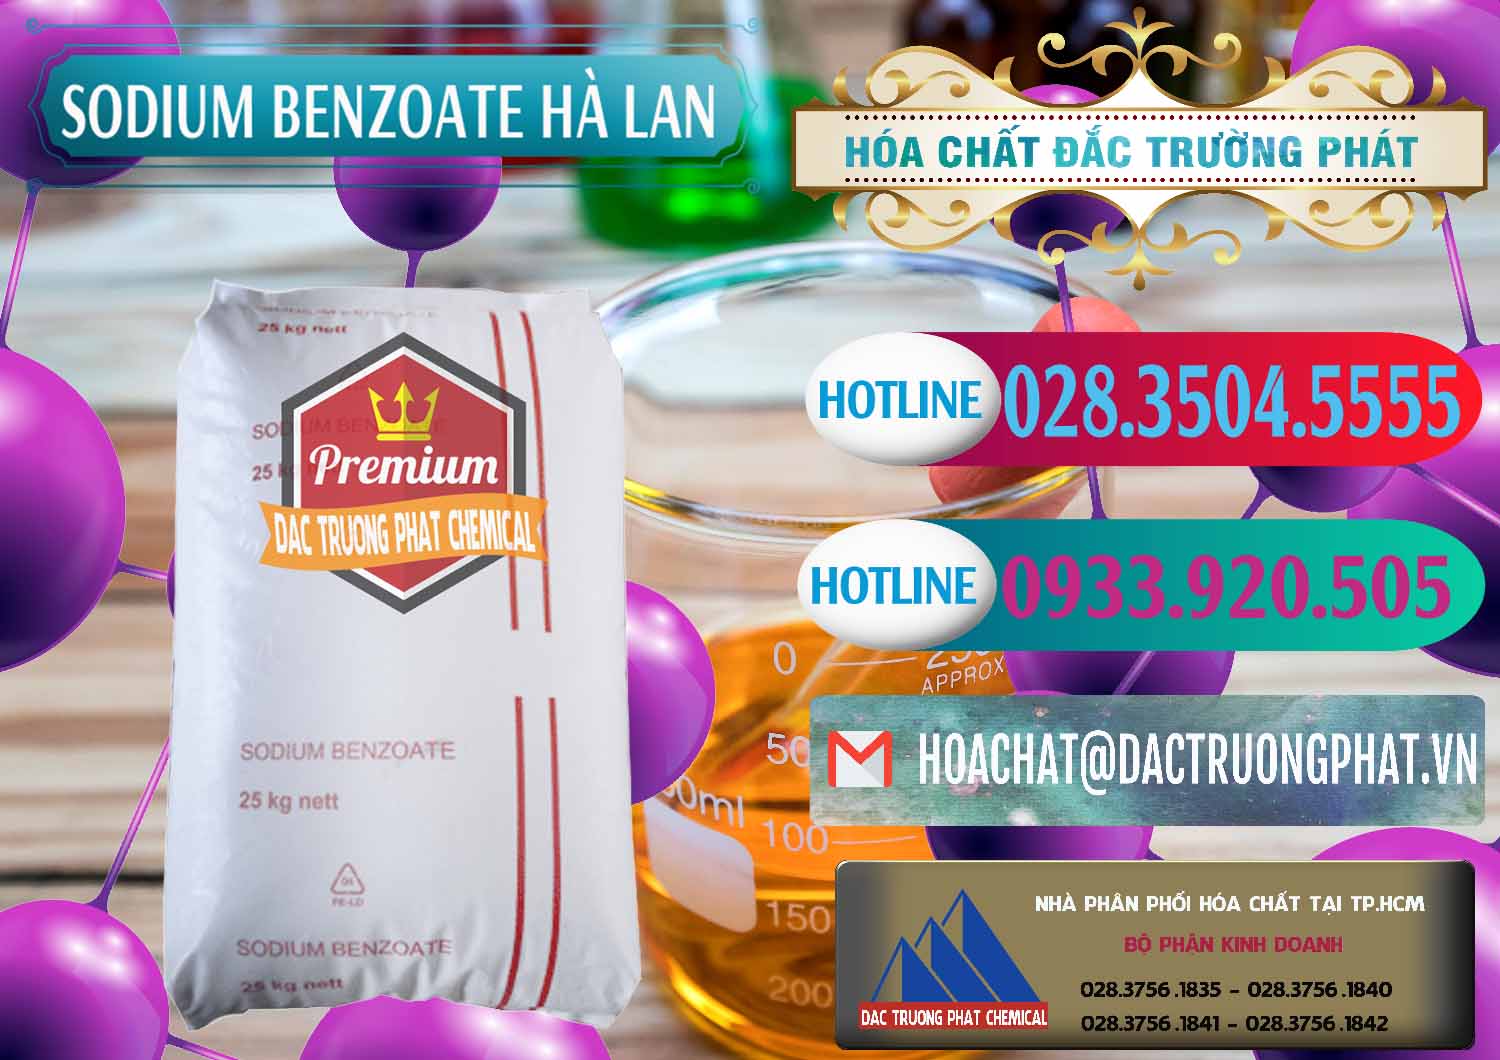 Cty bán _ cung cấp Sodium Benzoate - Mốc Bột Chữ Cam Hà Lan Netherlands - 0360 - Cty chuyên nhập khẩu và cung cấp hóa chất tại TP.HCM - truongphat.vn